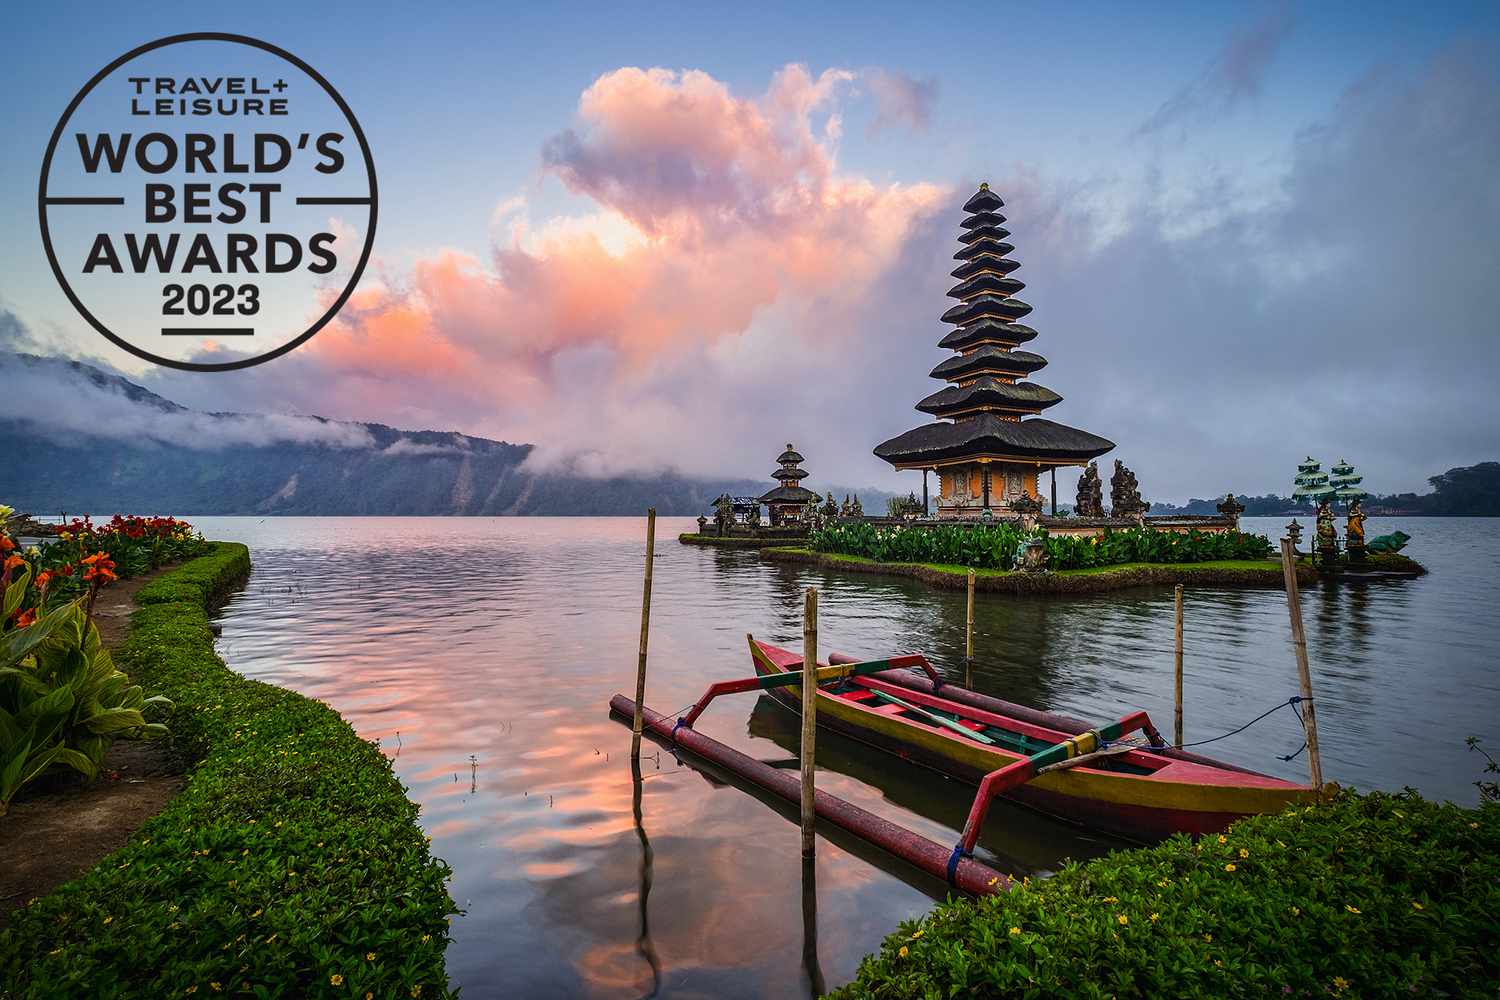 Daftar Travel + Leasure Terbaru: Bali Urutan Tiga Diantara 25 Pulau Terbaik Dunia